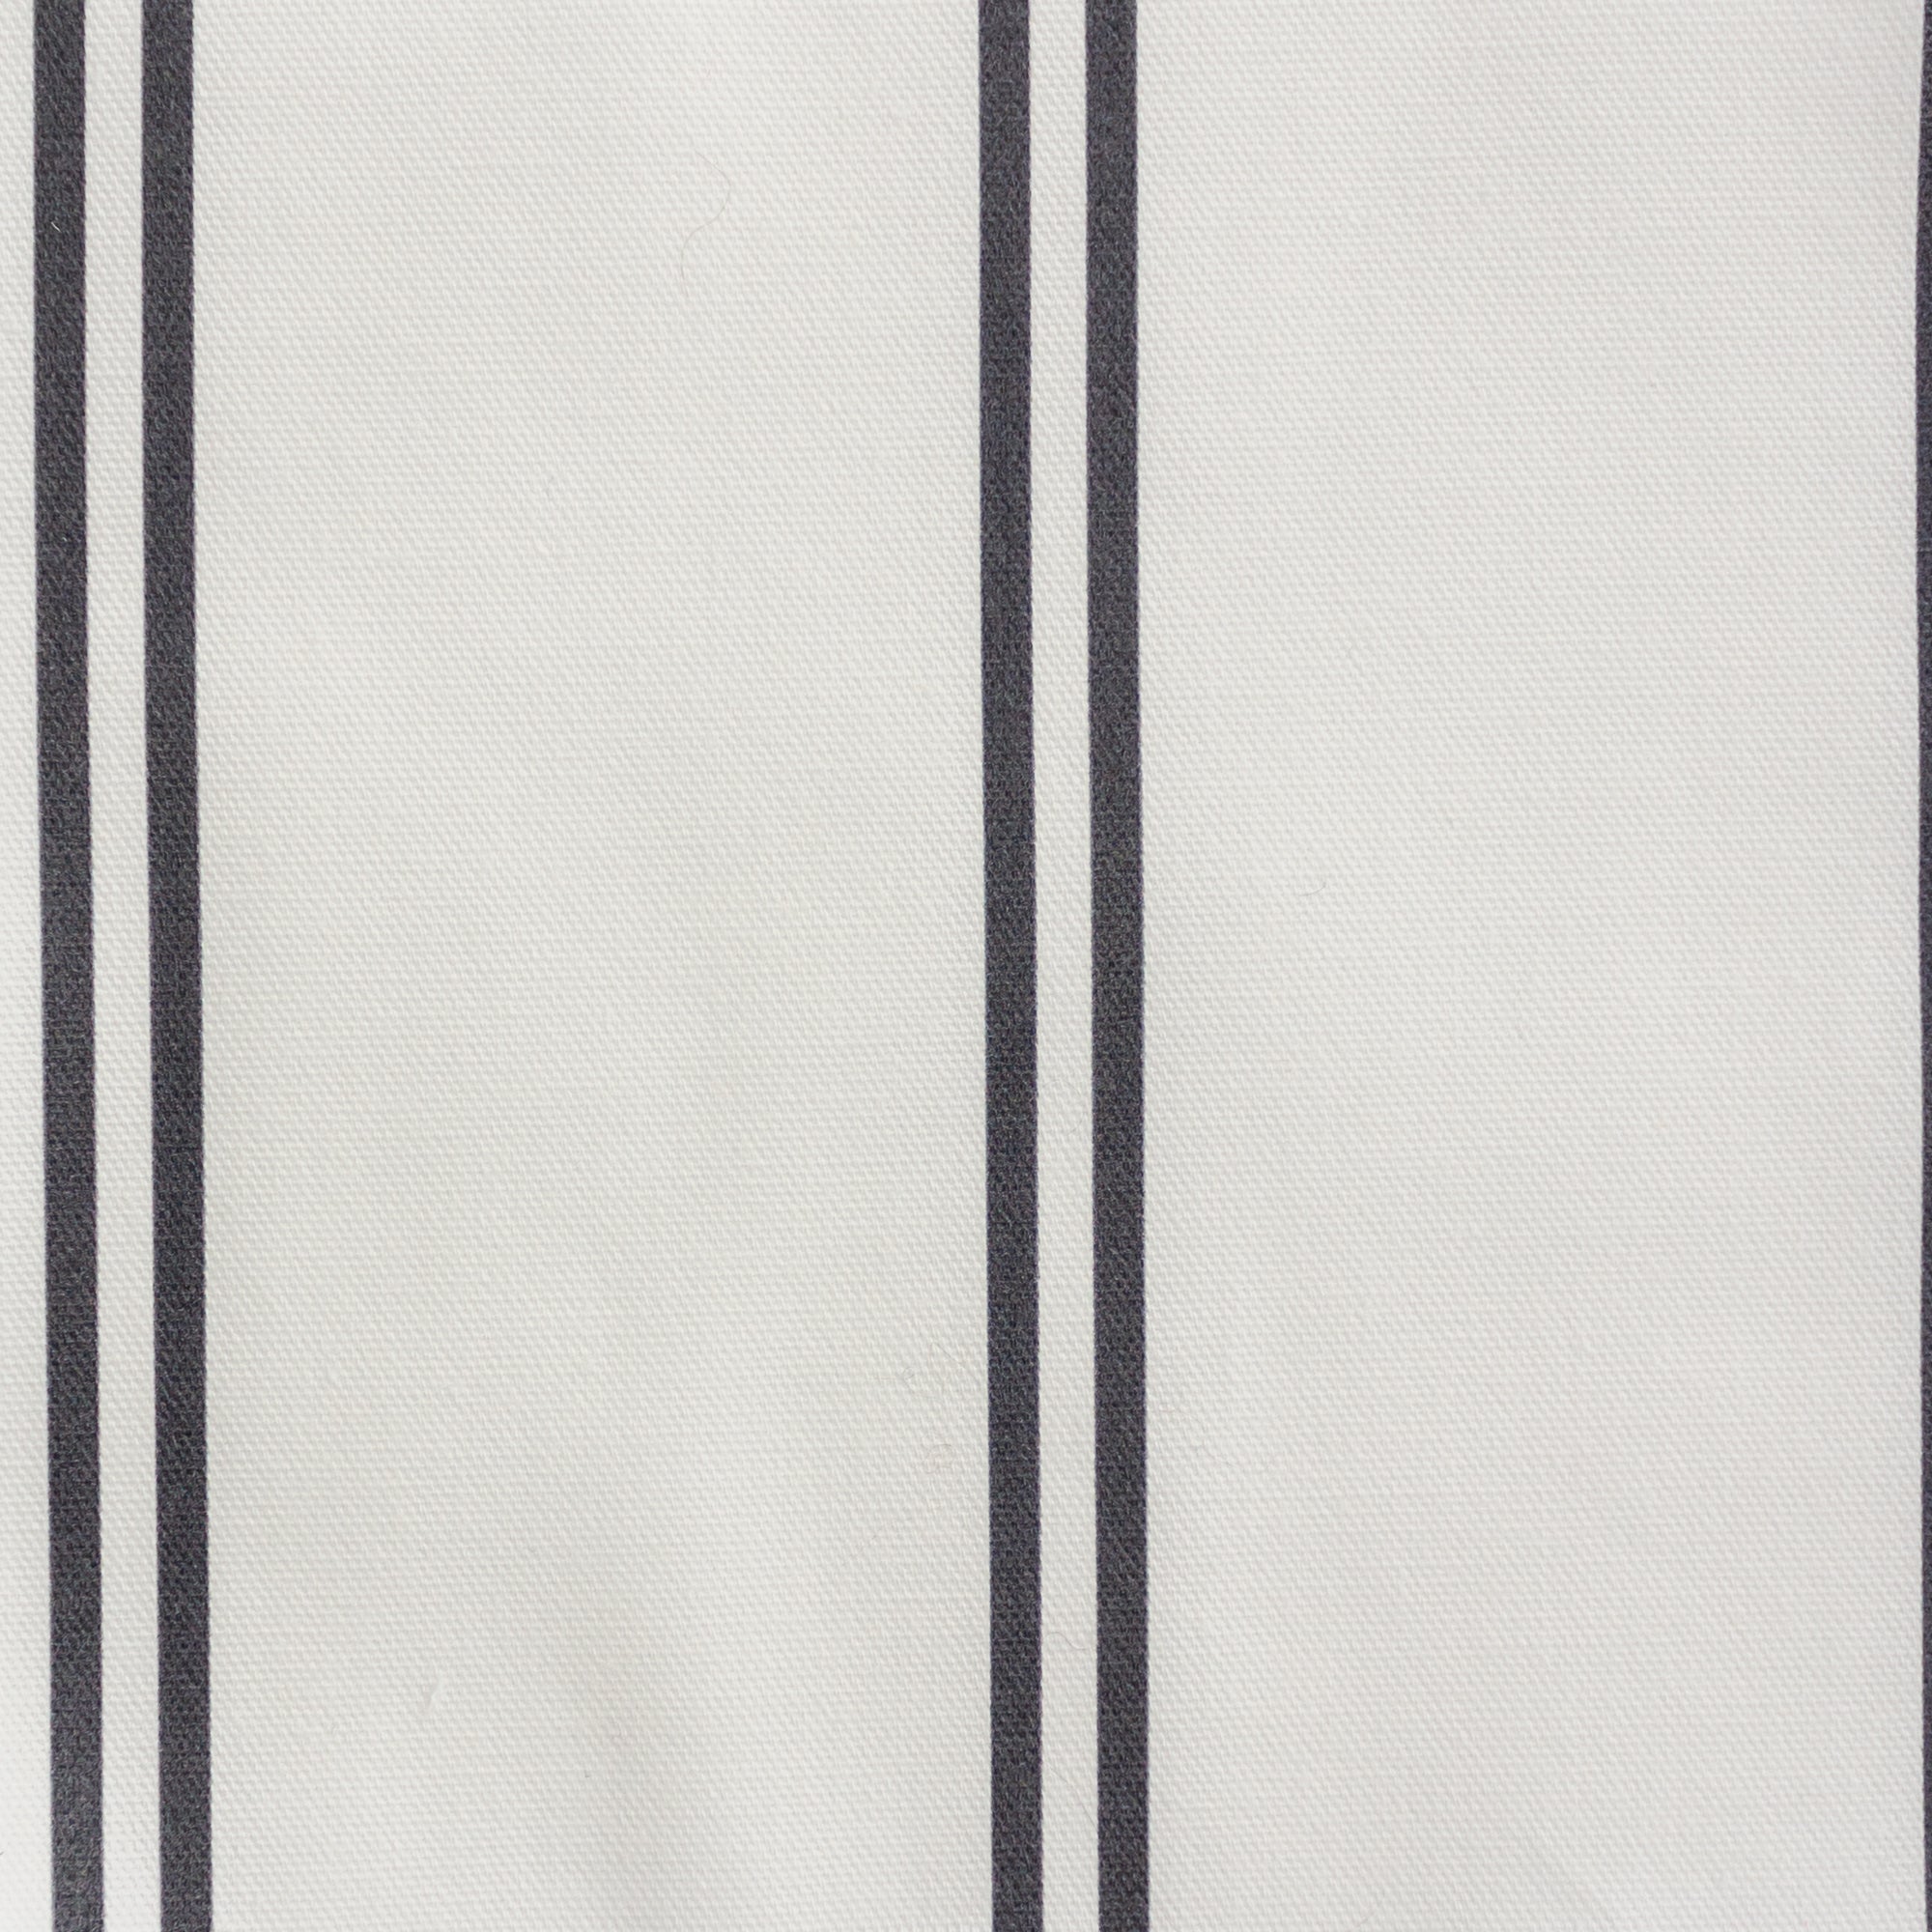 French Stripe Fabric - Graphite - Hydrangea Lane Home